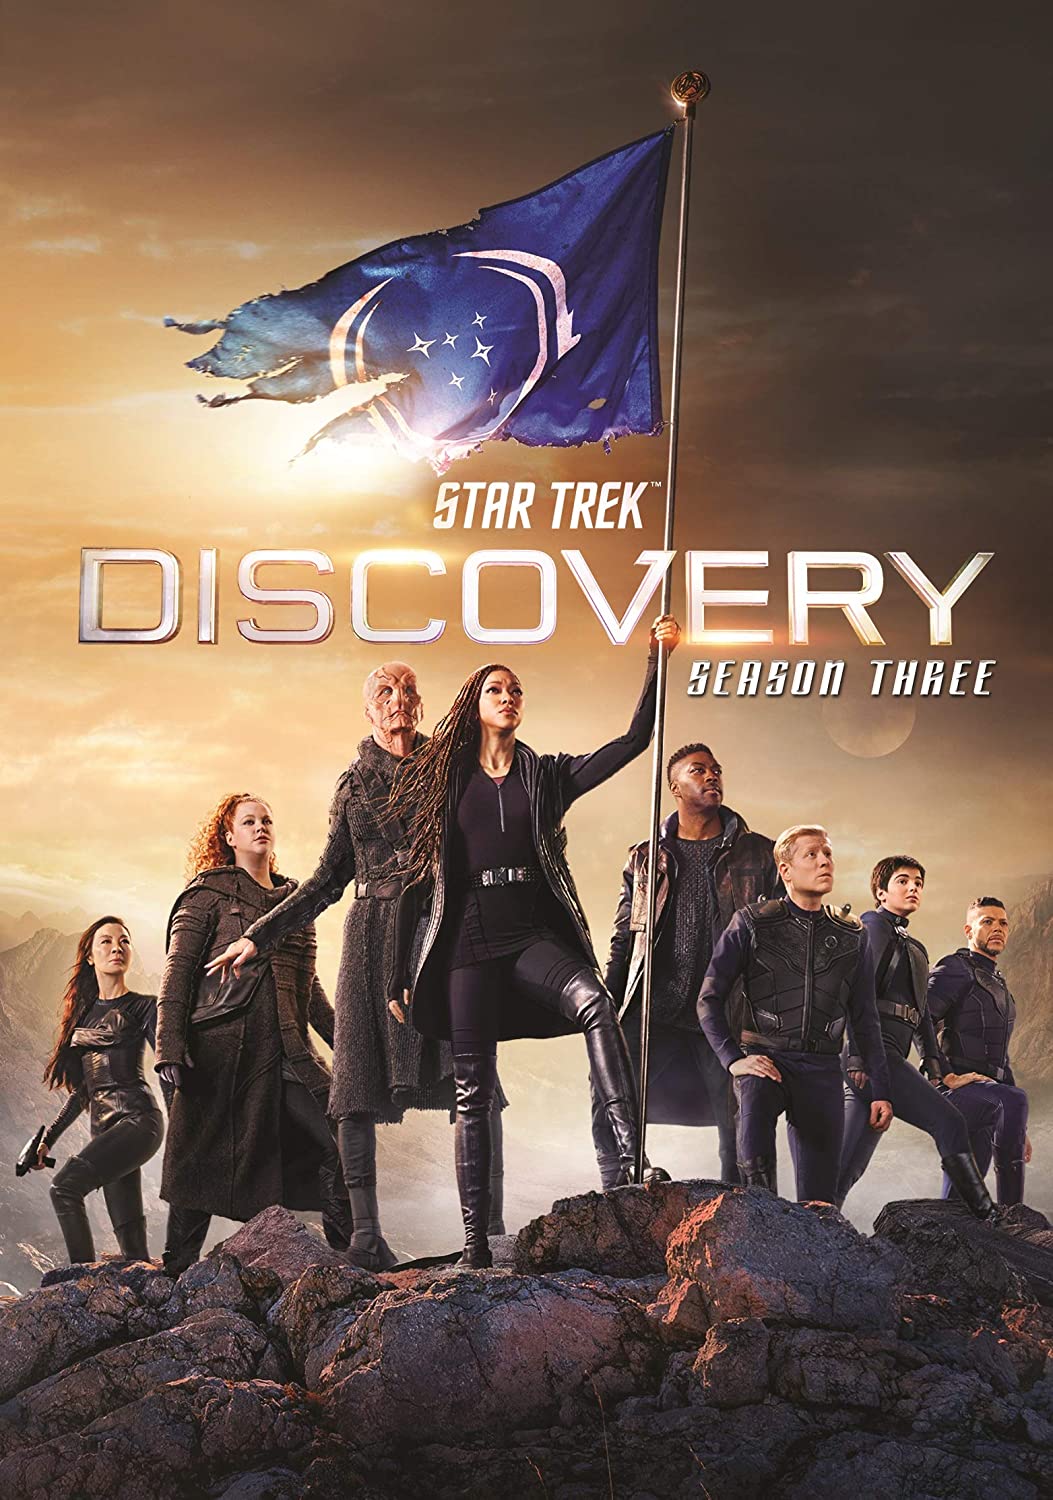 ดูหนังออนไลน์ Star Trek Discovery Season 3 EP4 สตาร์ เทรค ดิสคัฟเวอรี่ ซีซั่นที่ 3 ตอนที่ 4